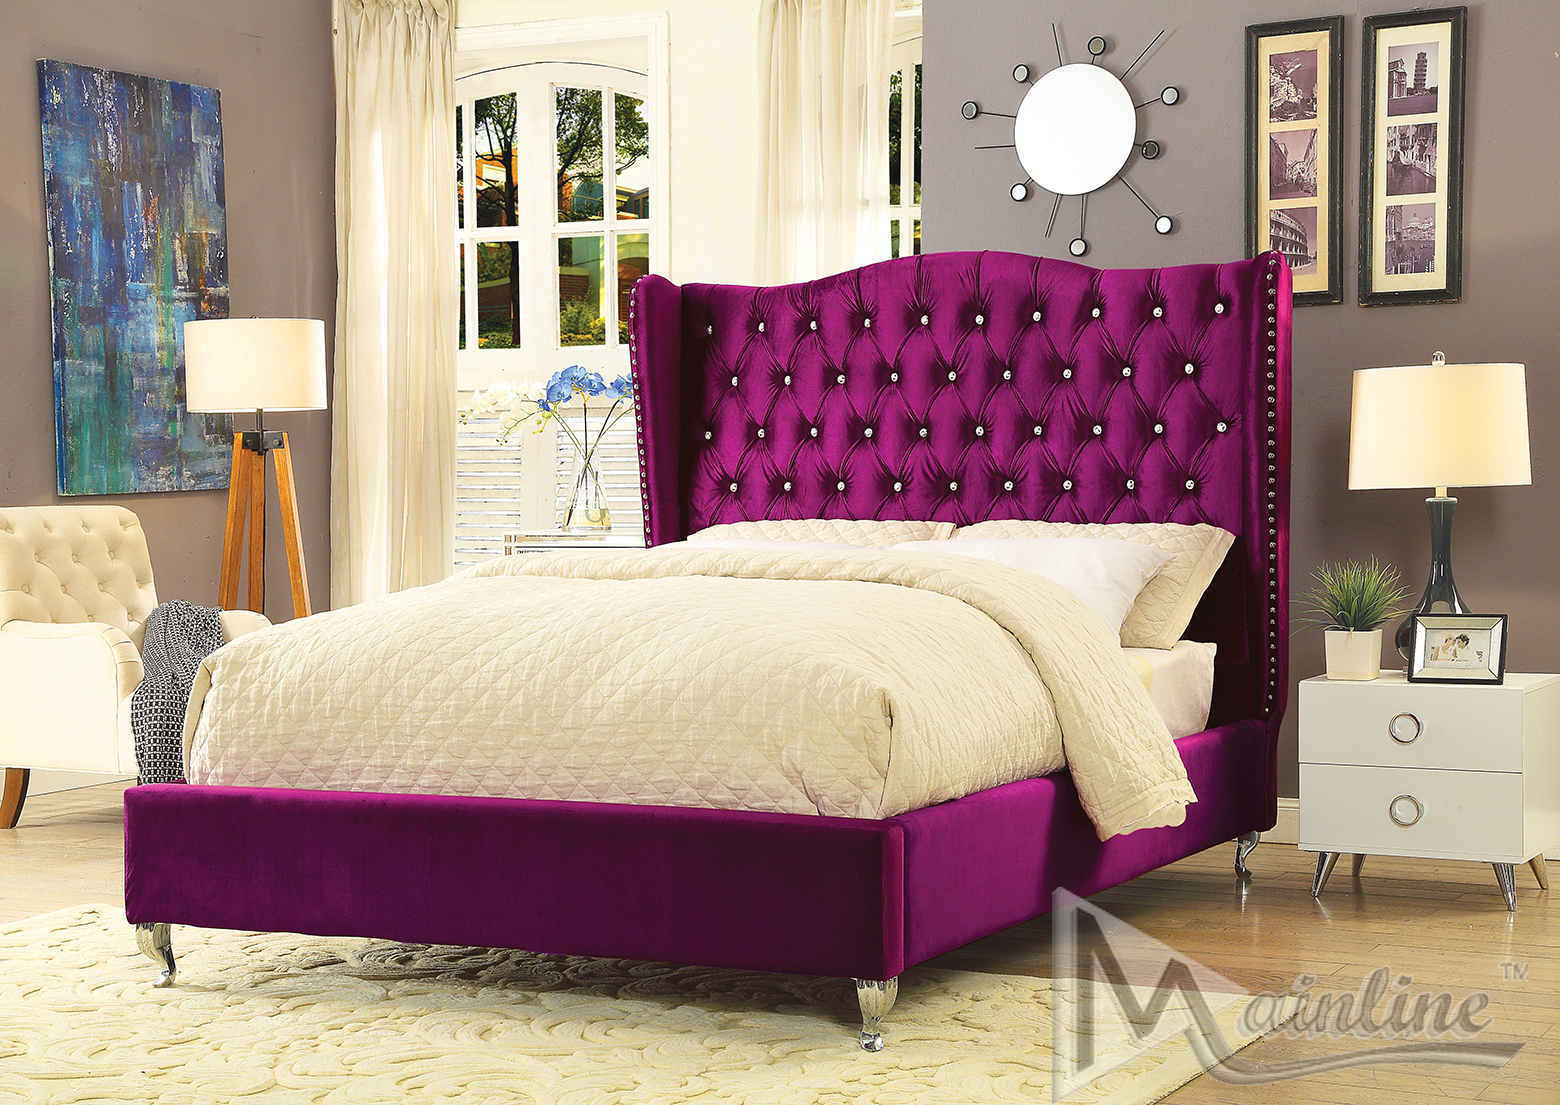 Violetta King Size Bed 89973 Mainline, Purple Headboard King Size